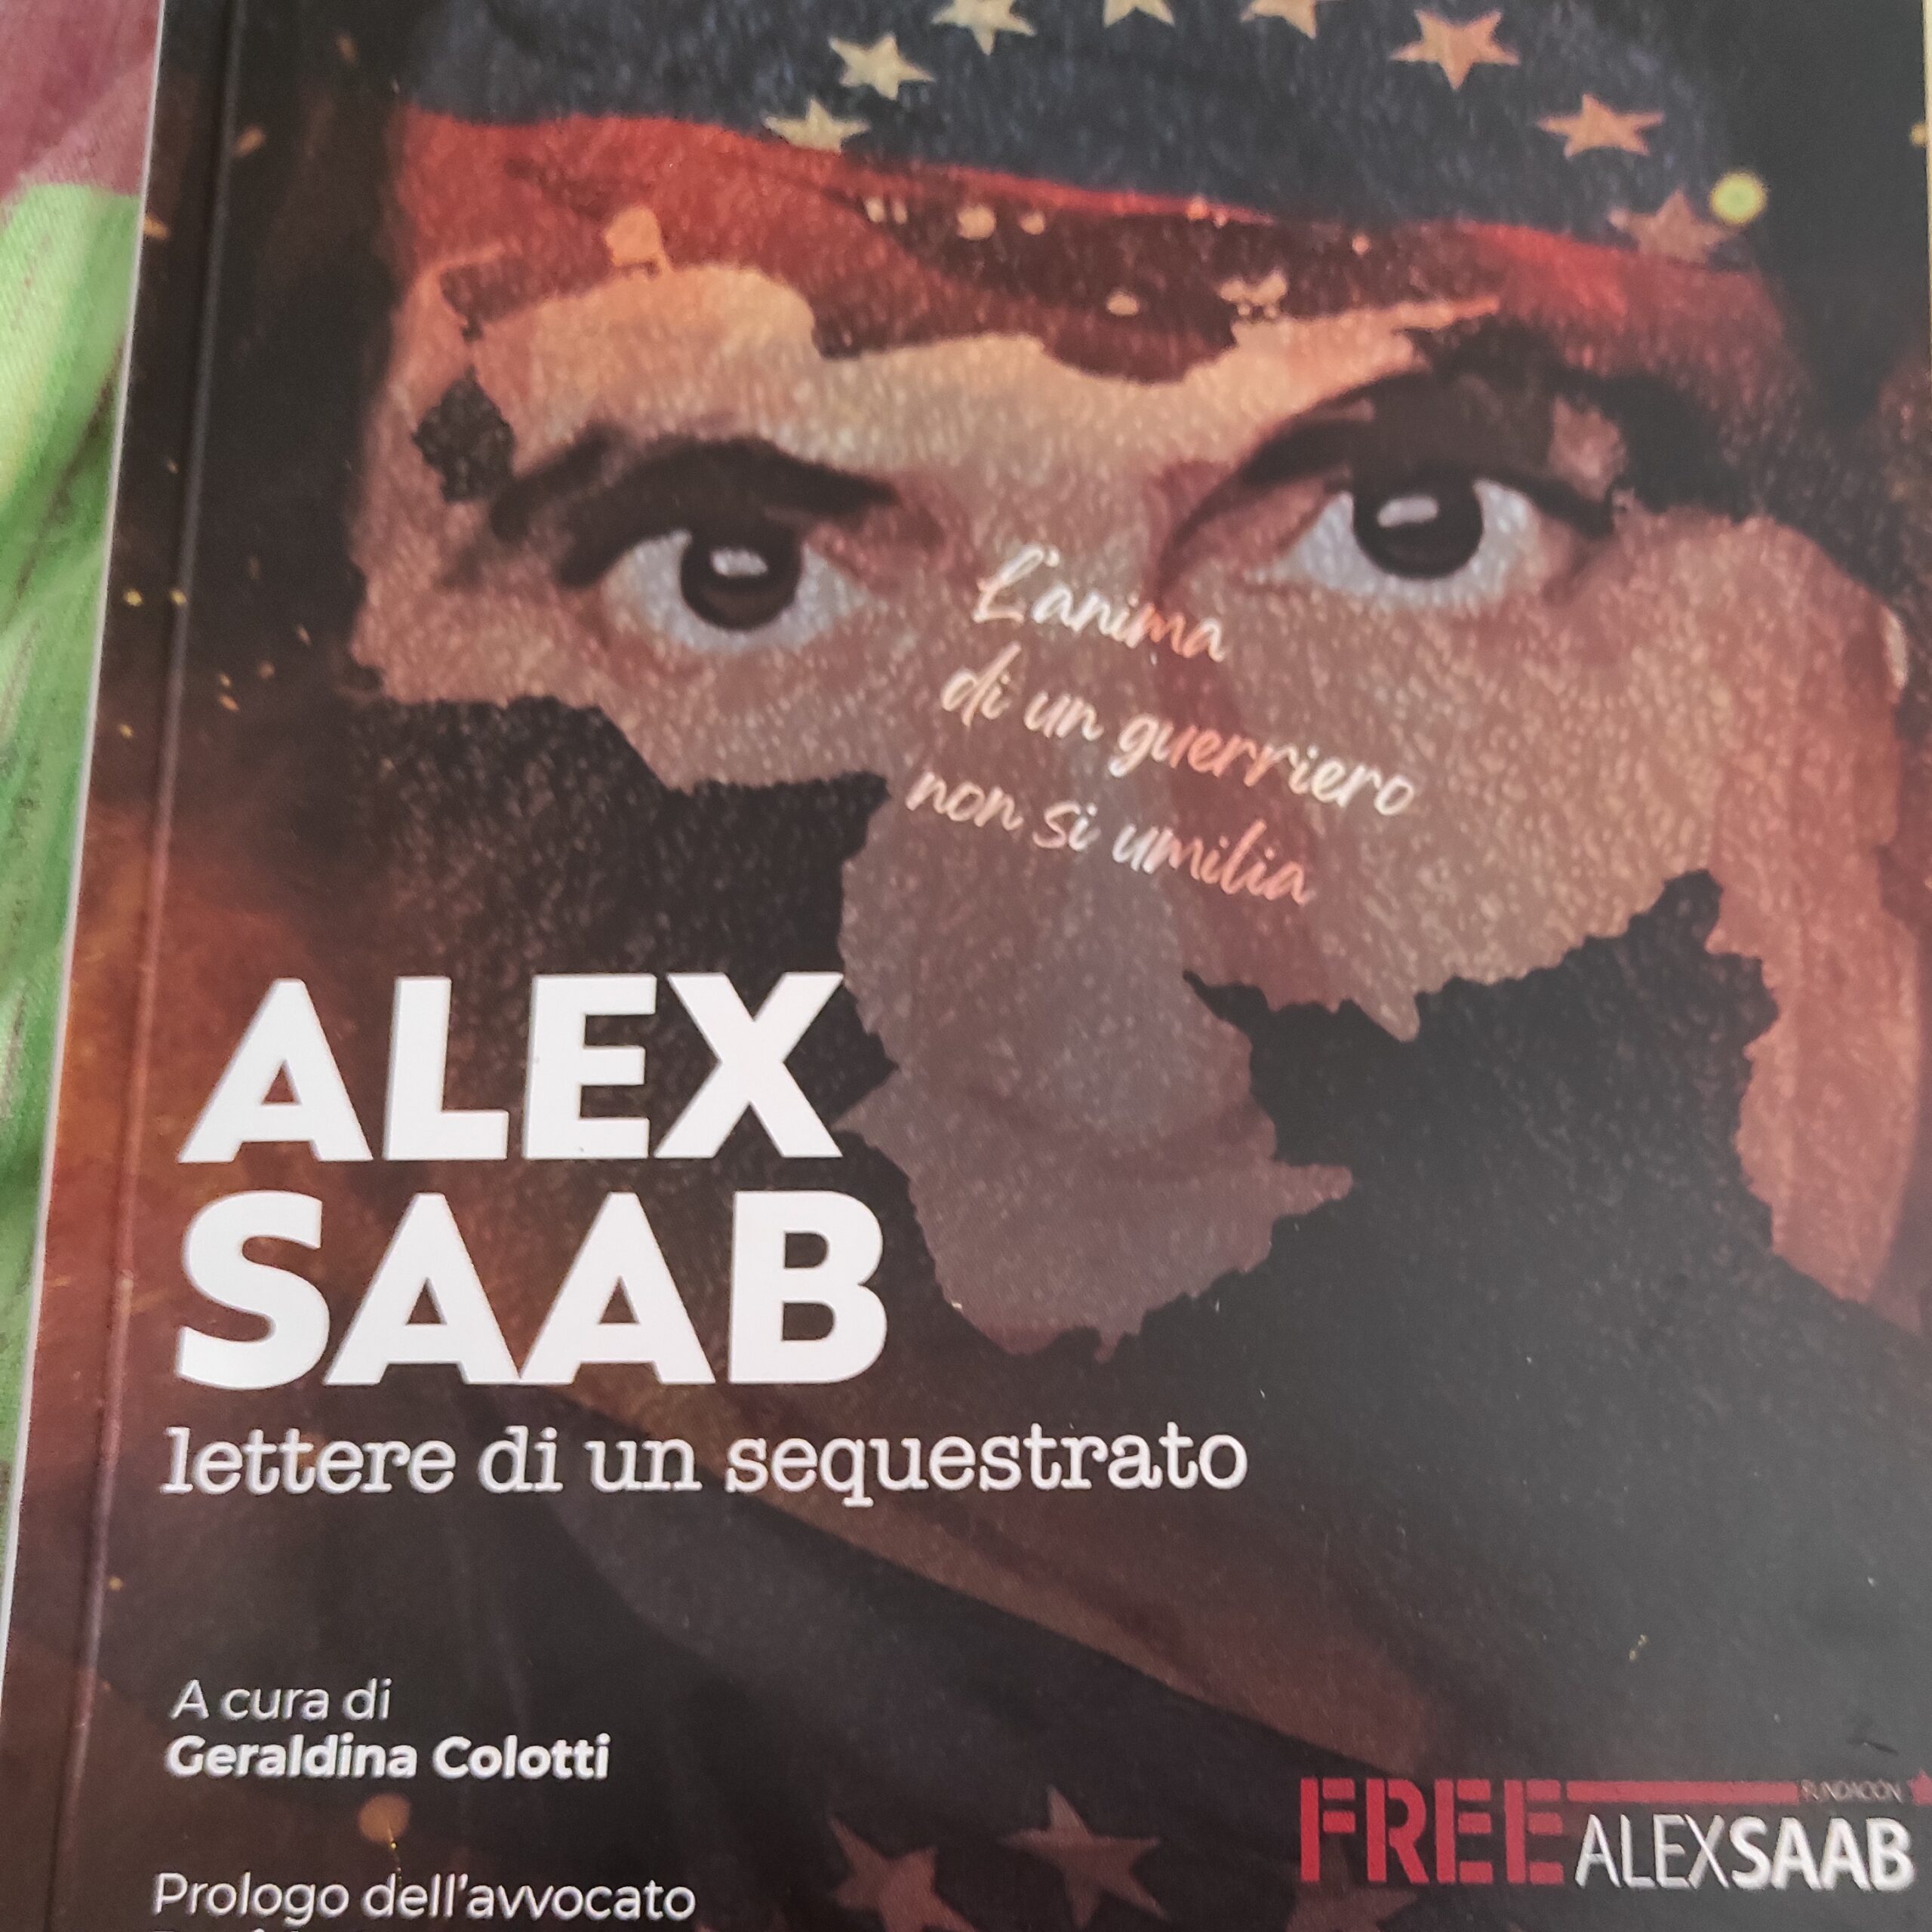 Escribió.  Venezuela: El caso Alex Saab, una historia que importa